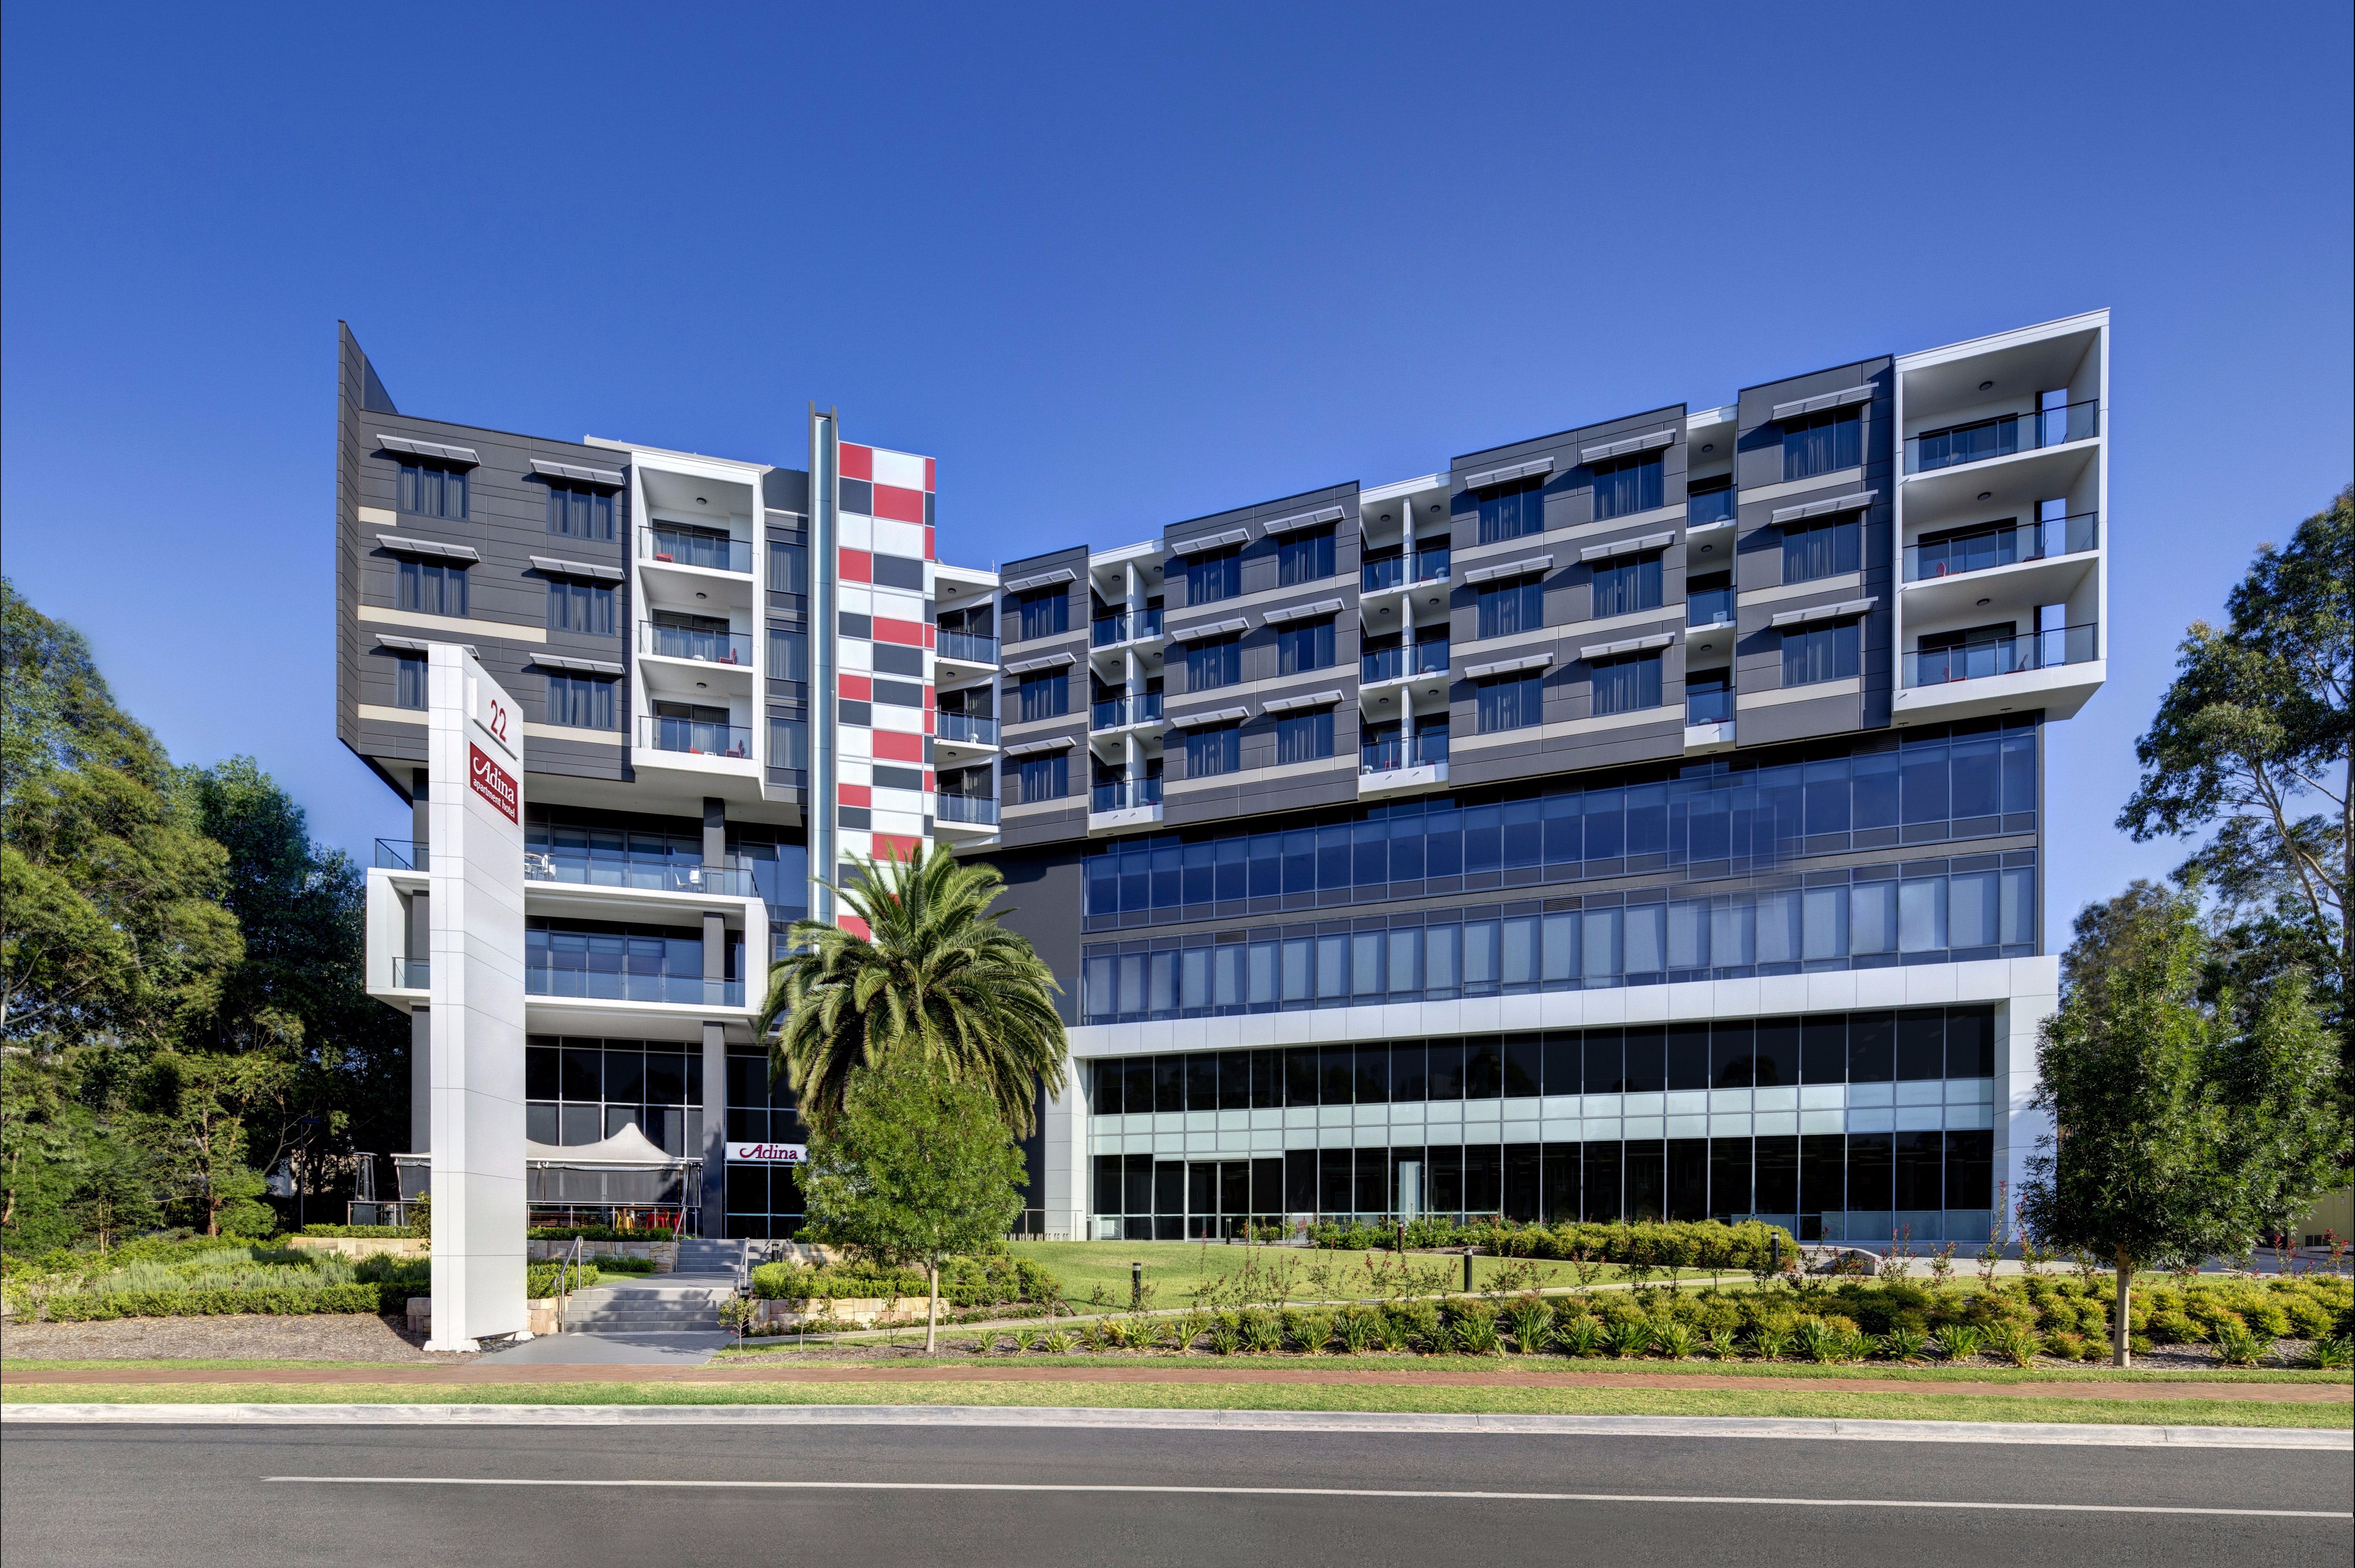 Adina Apartment Hotel Norwest Sydney - Accommodation Mount Tamborine